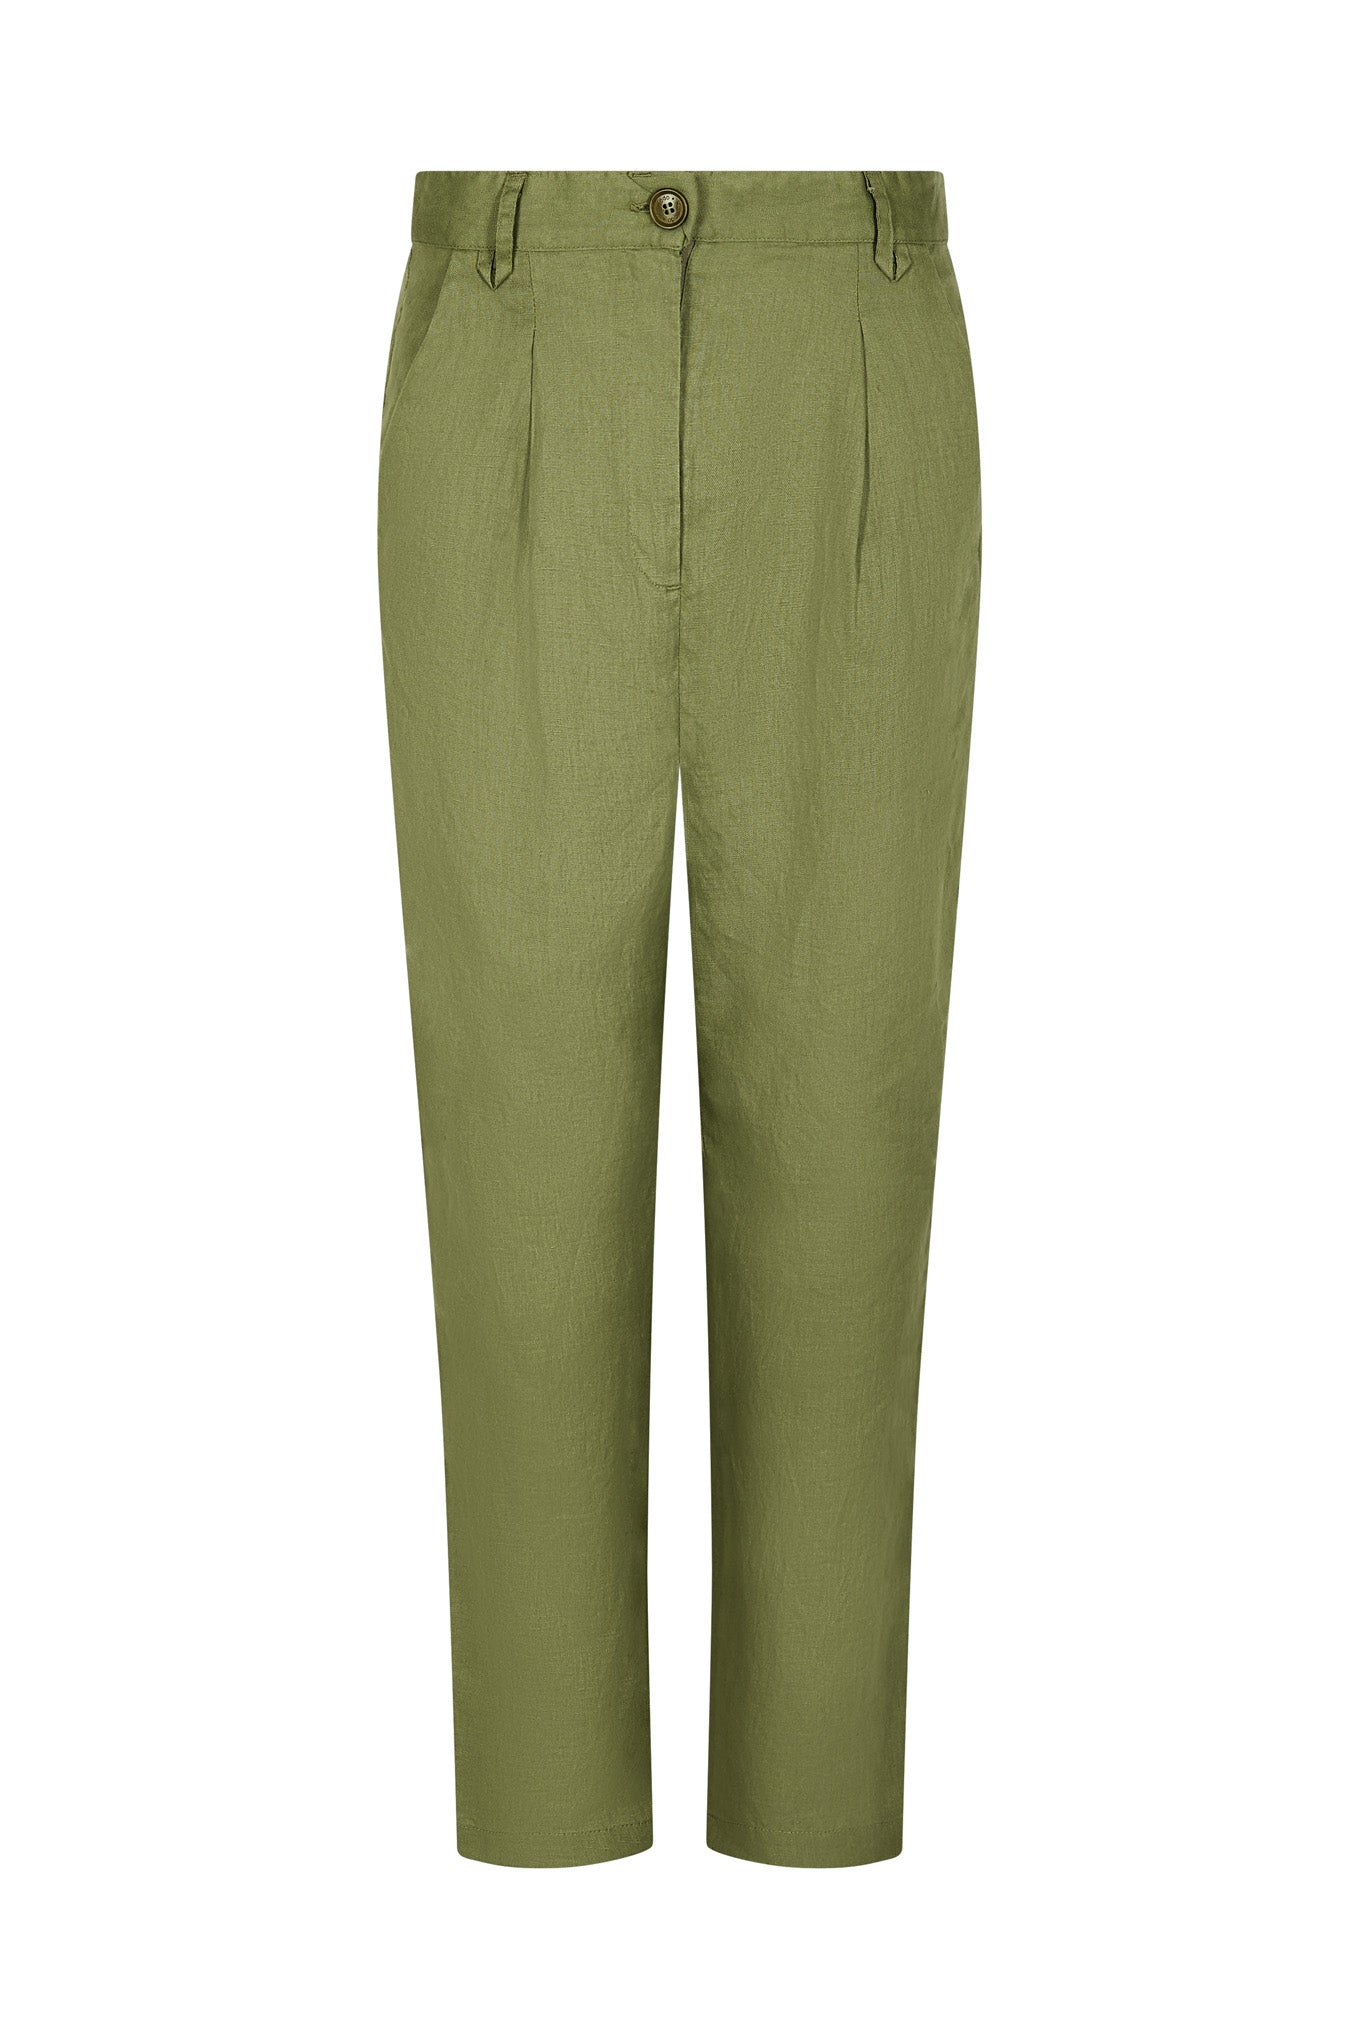 Pantalon vert PURPLE en Tencel et lin par Komodo